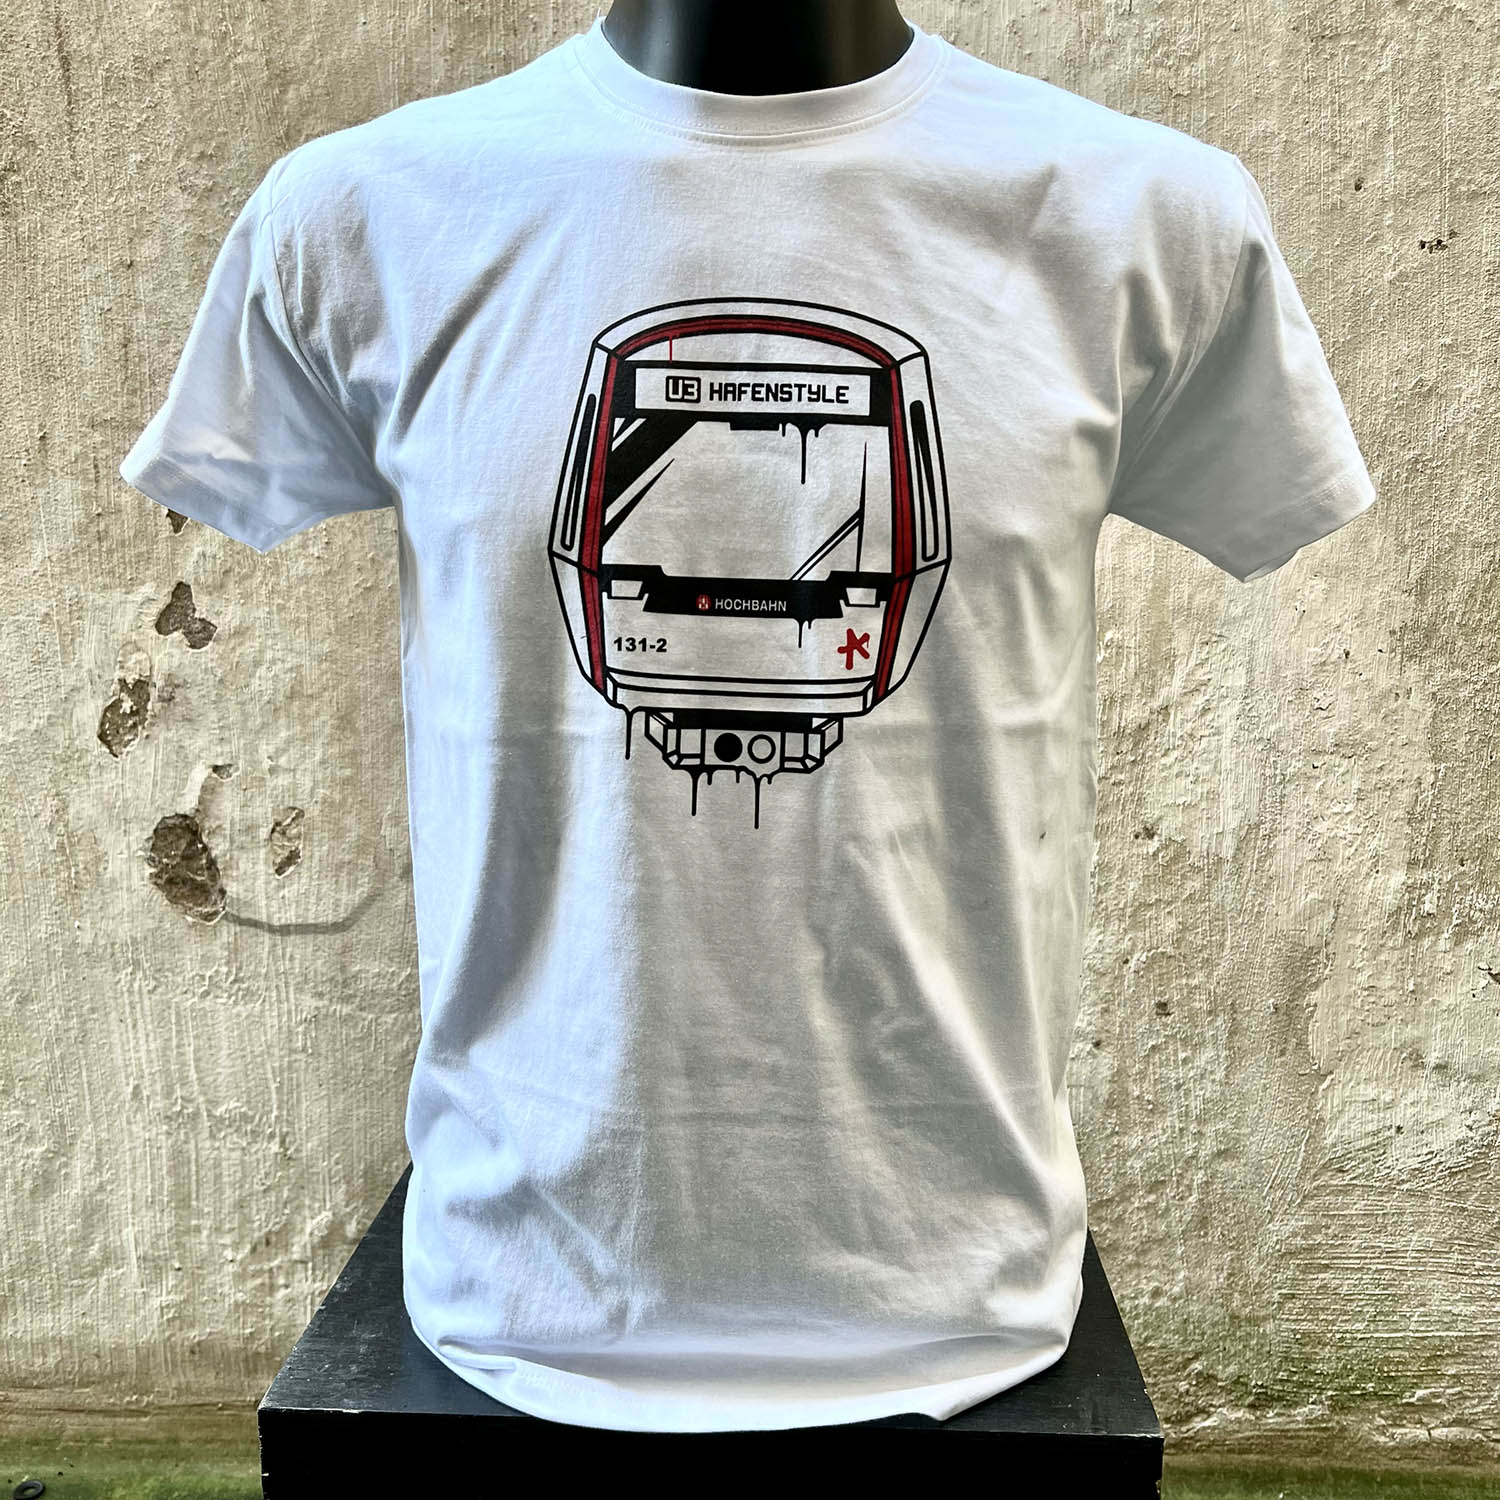 delikatesse kontrol Skære af Hafenstyle - Subway Front 131-2 T-Shirt (white)